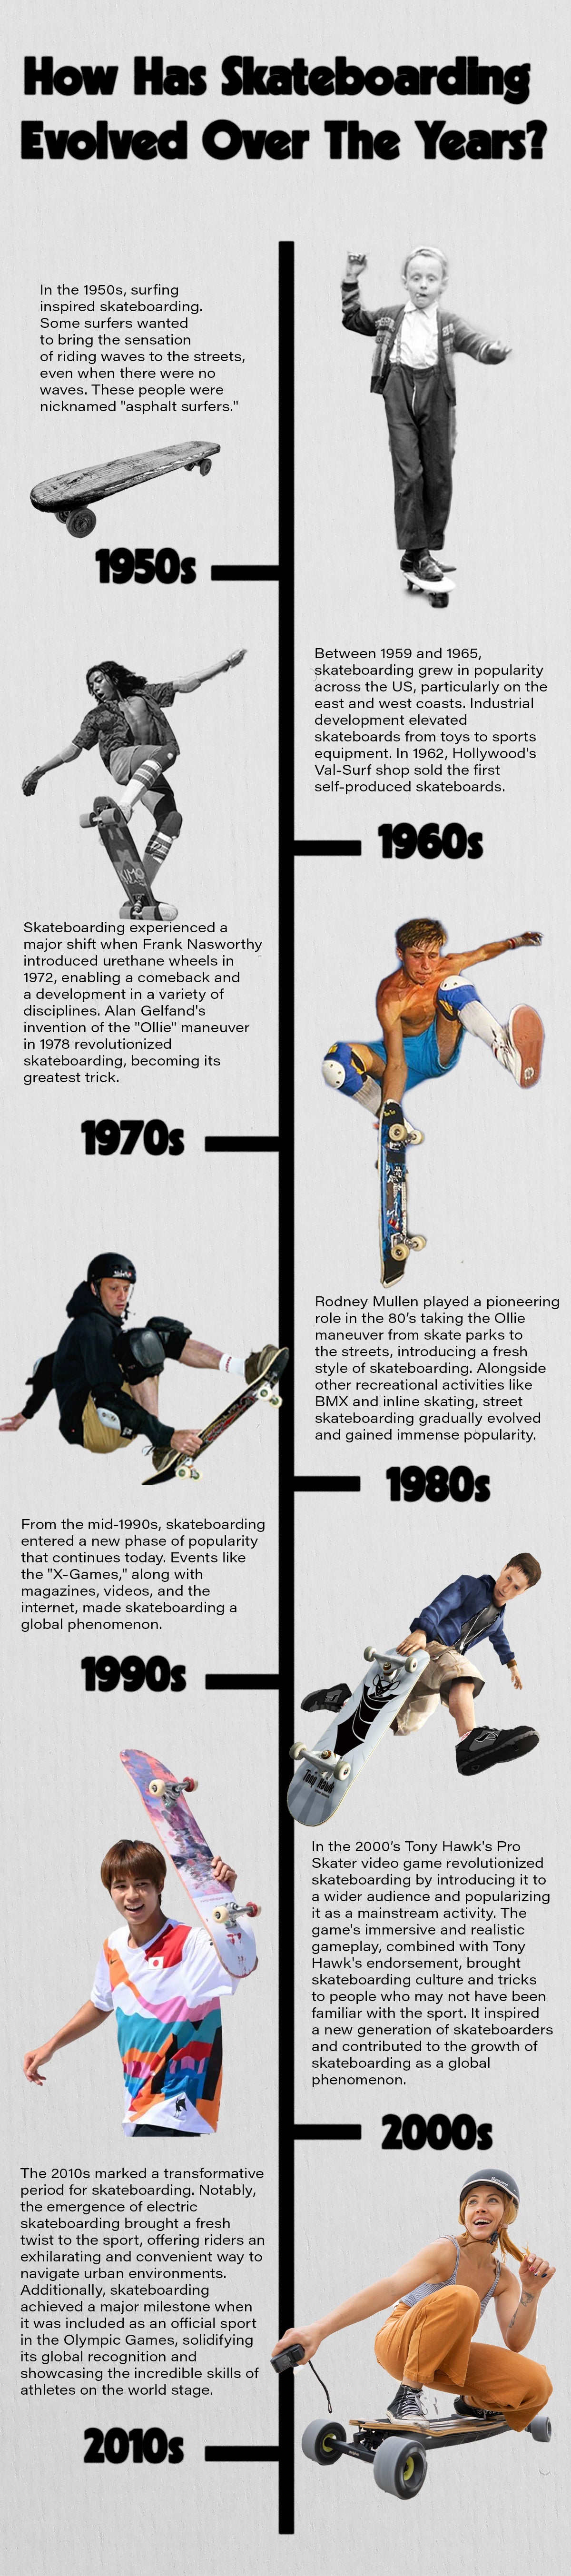 history of skateboarding